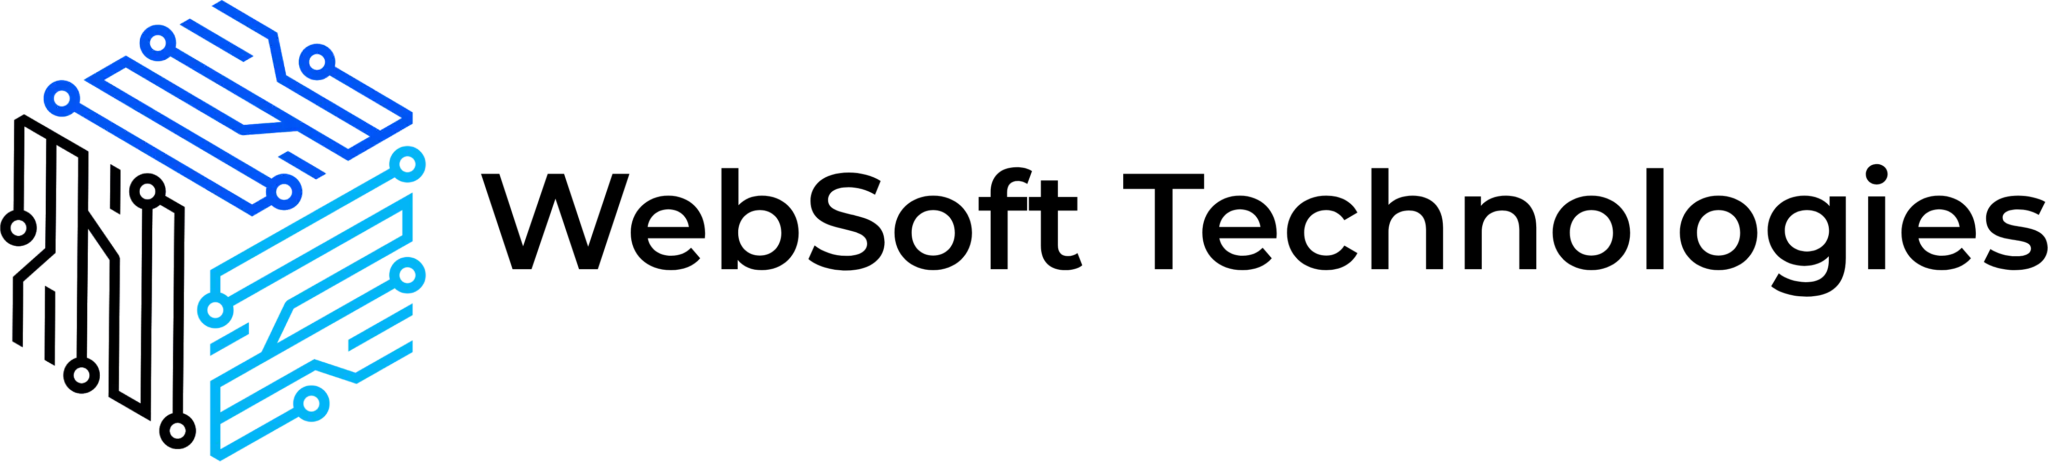 websoft technologies logo